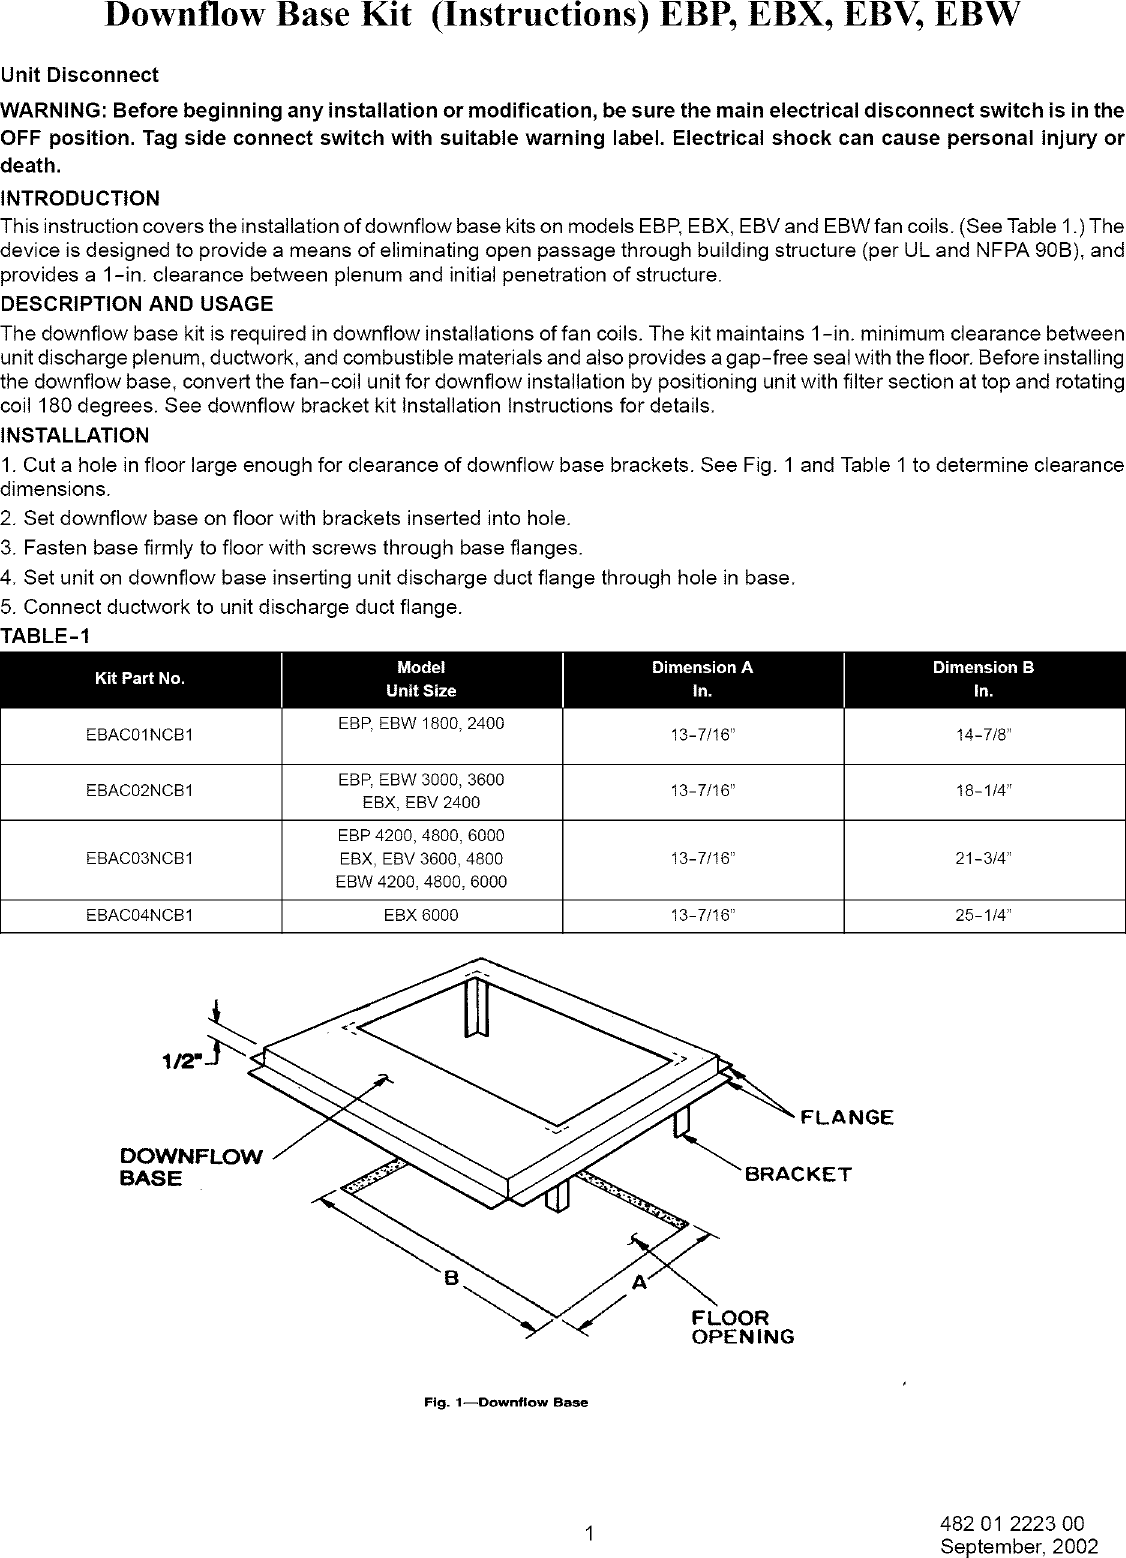 ICP Evaporator Coils Manual L0502508